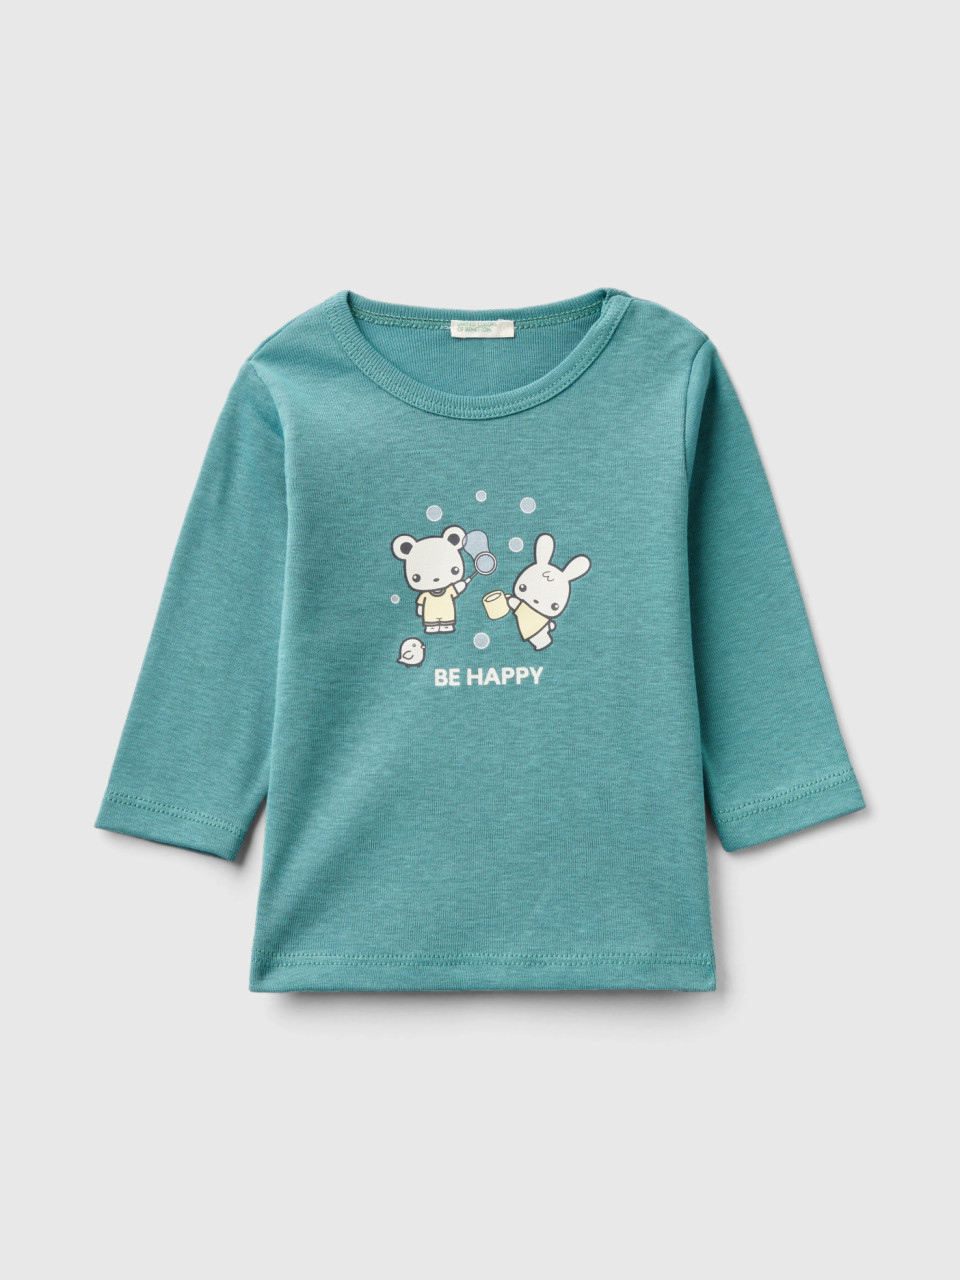 Benetton, Long Sleeve 100% Organic Cotton T-shirt, Green, Kids